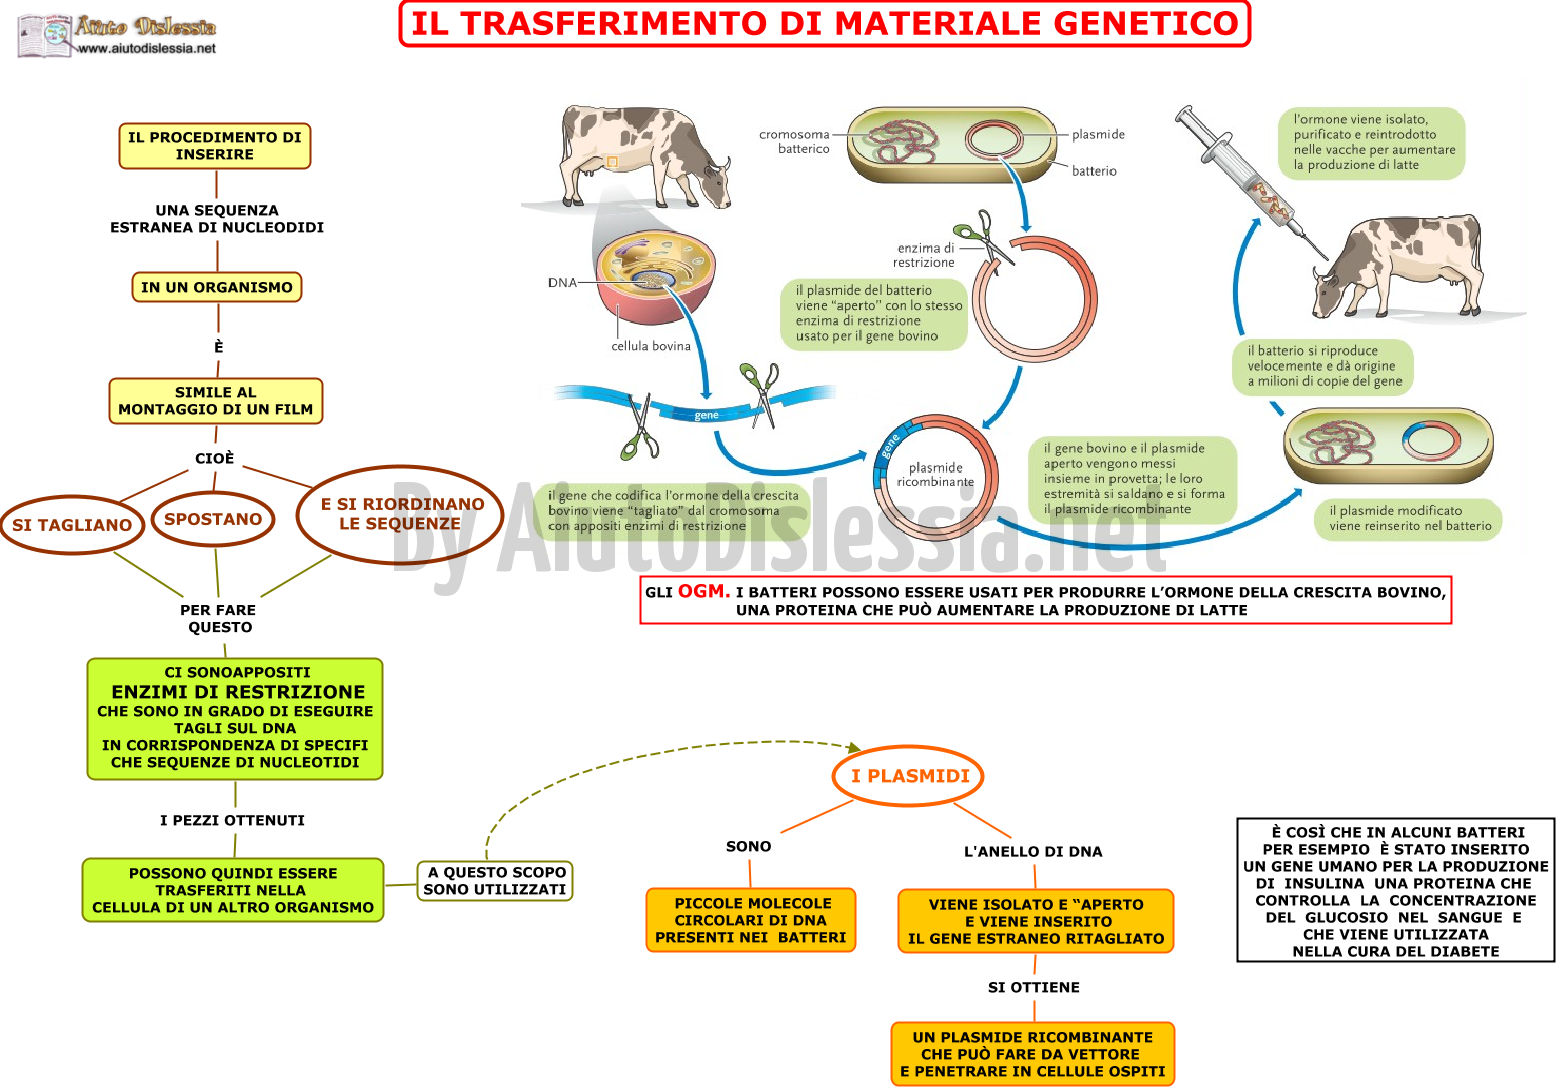 03.-IL-TRASFERIMENTO-DI-MATERIALE-GENETICO